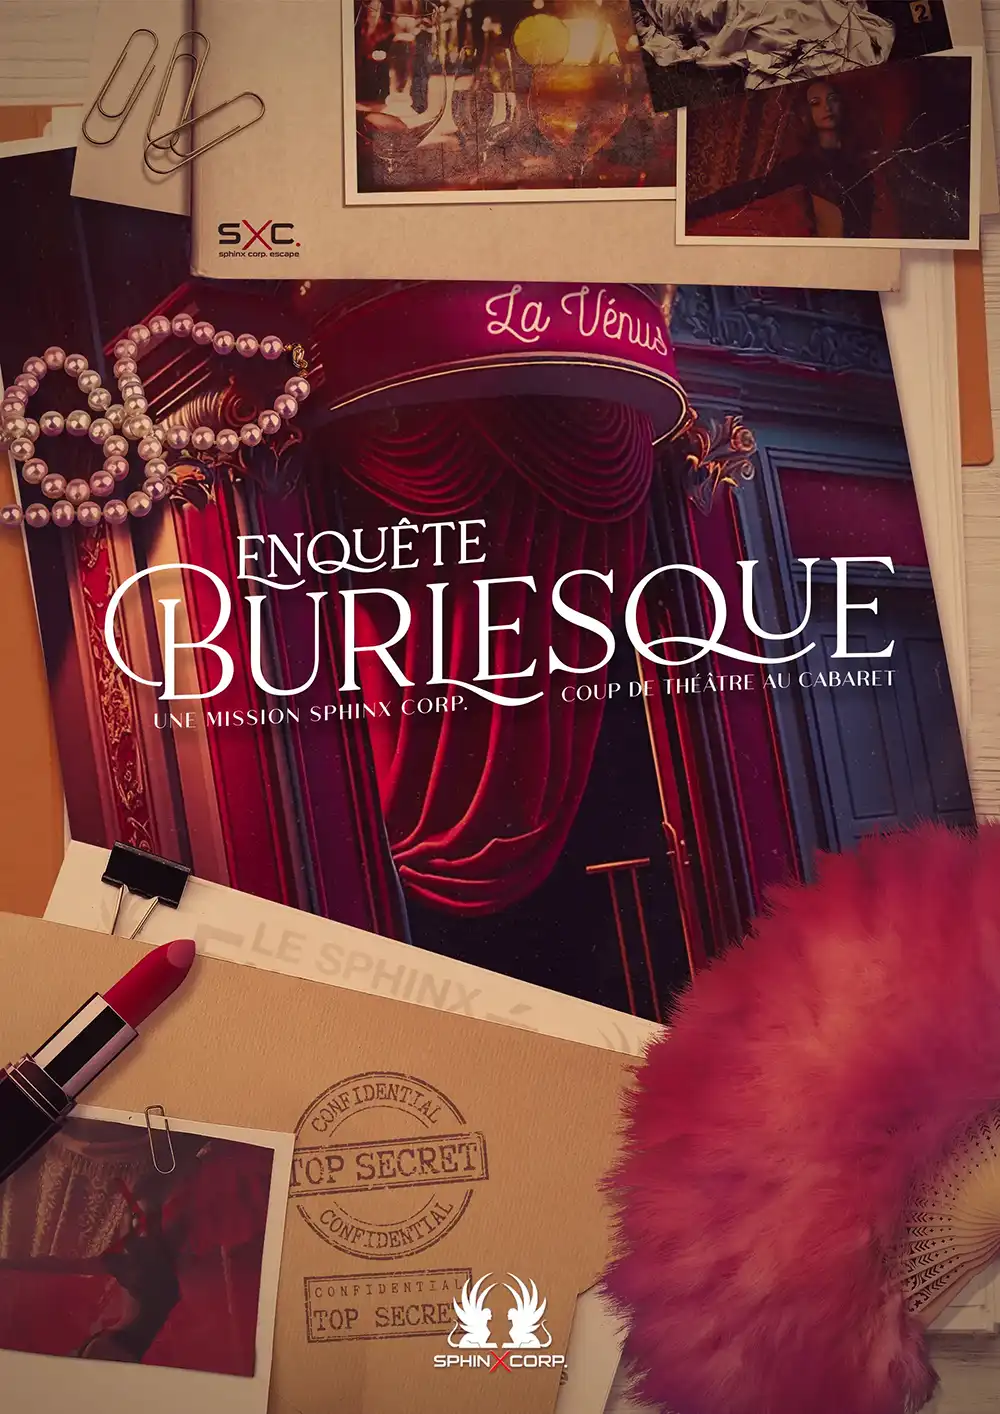 Burlesque, Cabaret_La_Venus_sphinx_corp_escape_game_toulouse